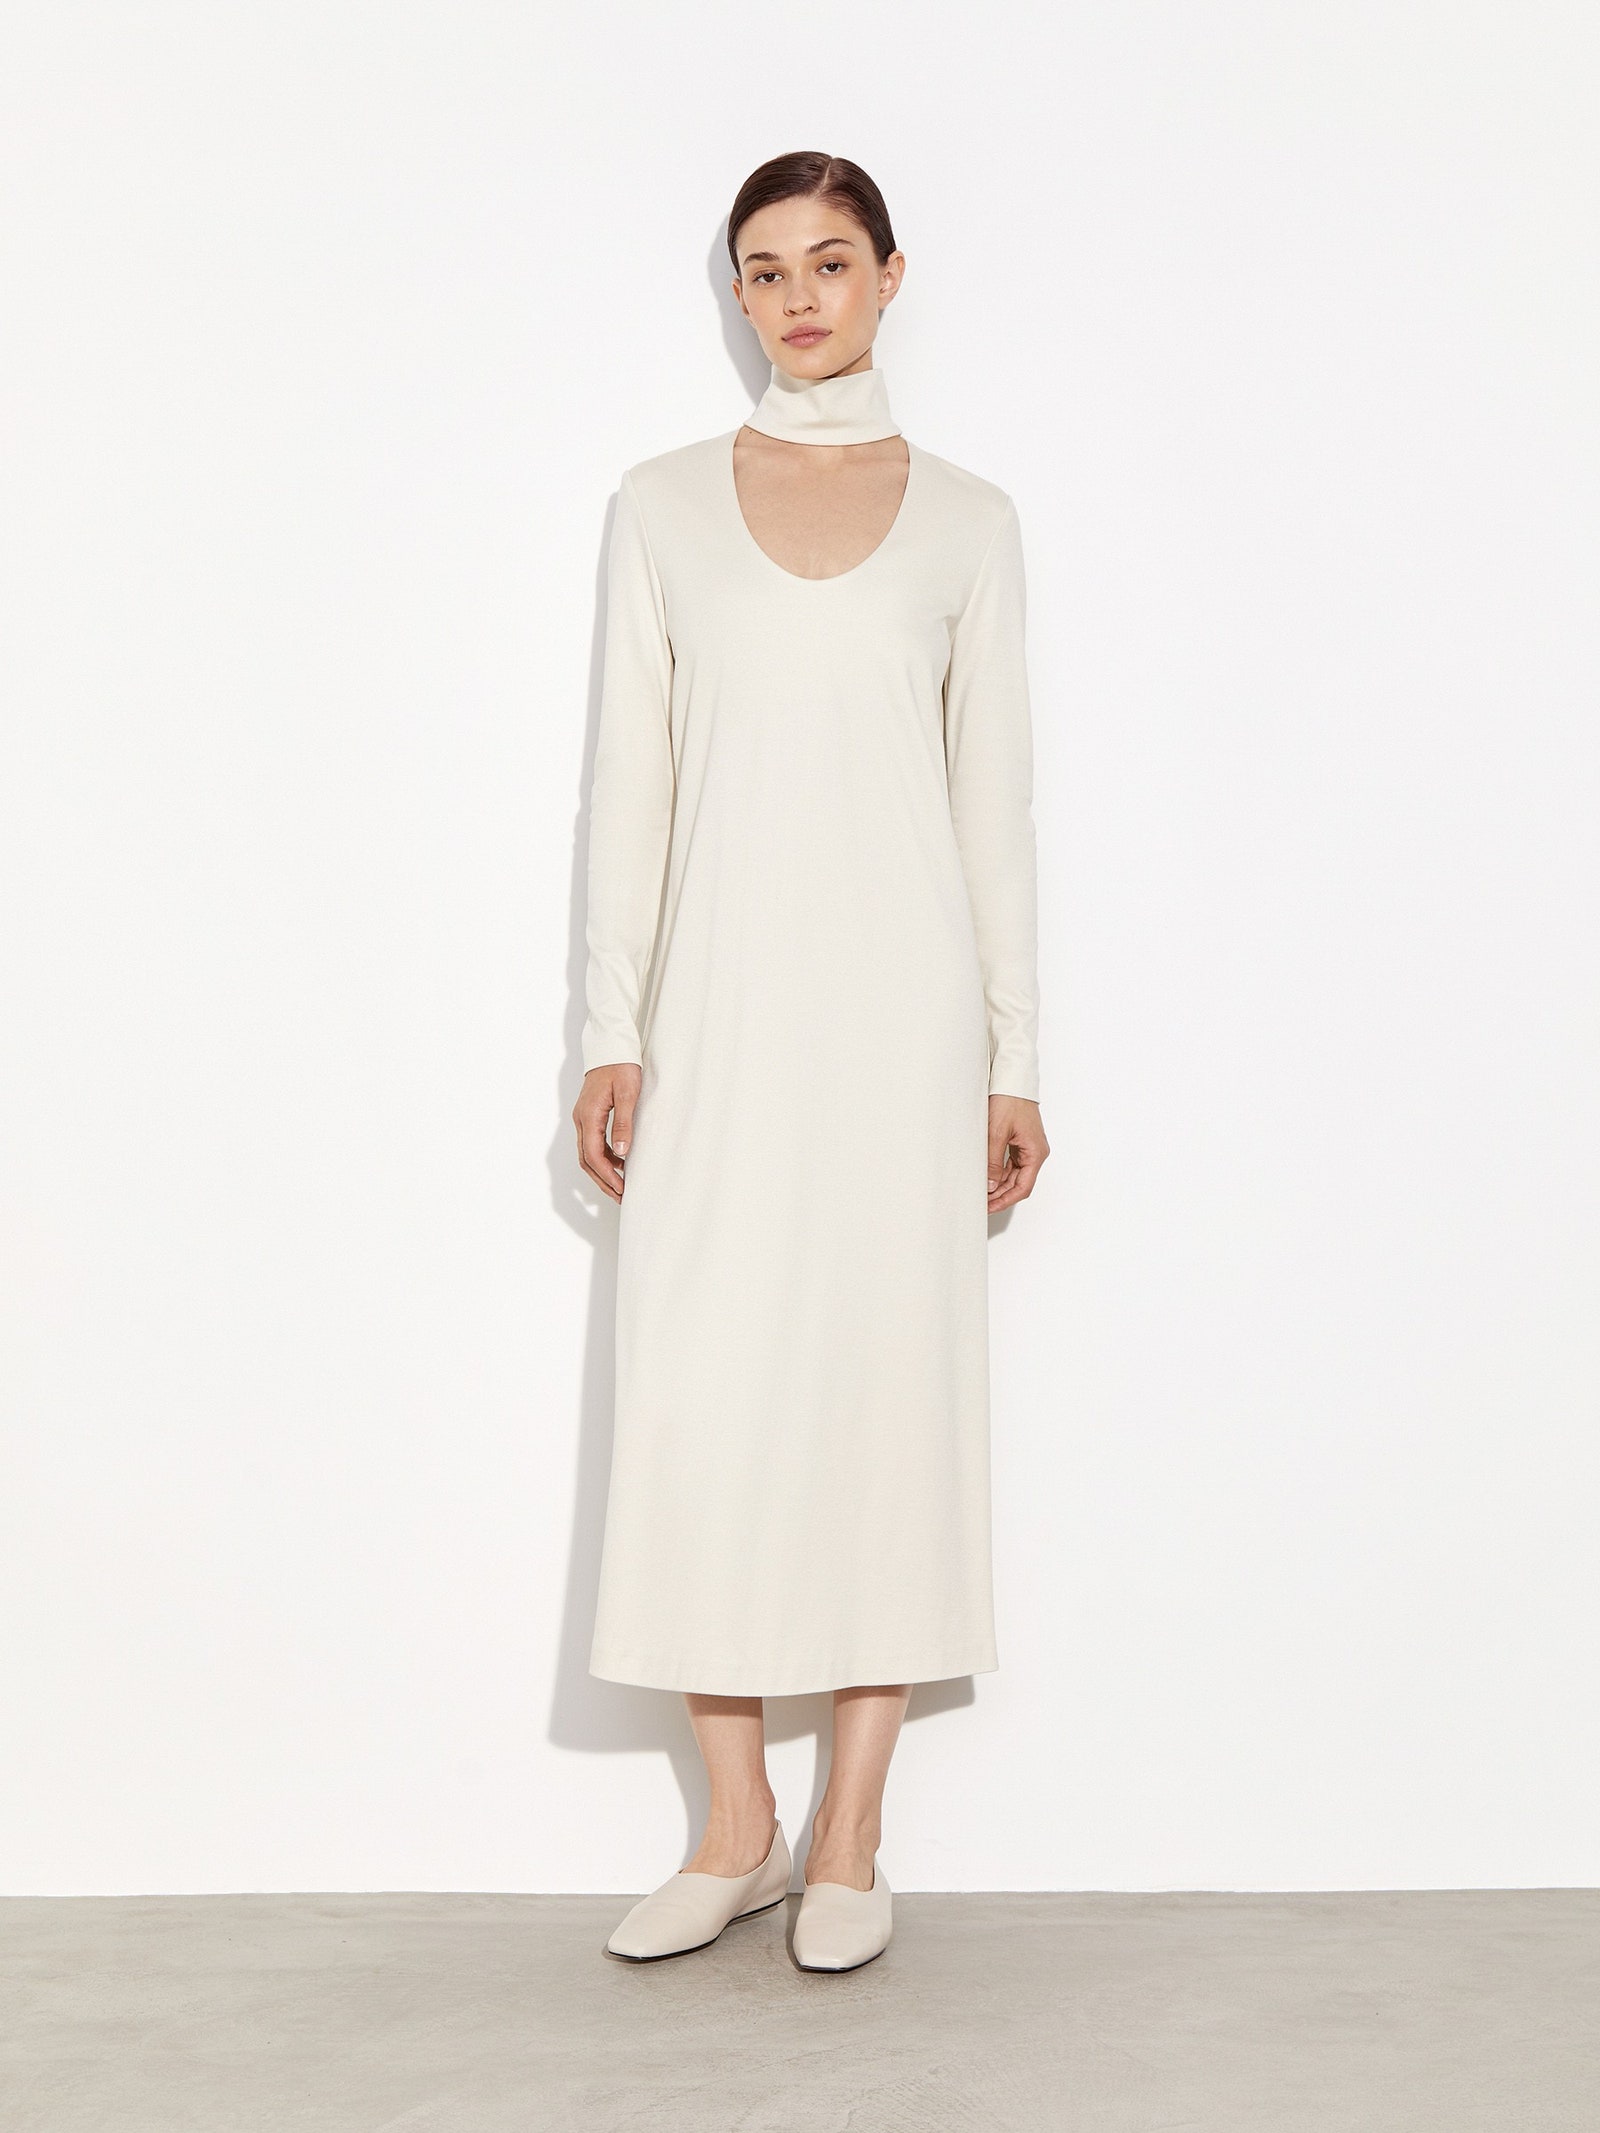 Трикотажное платье — незаменимая вещь на осень по версии Рози ХантингтонУайтли